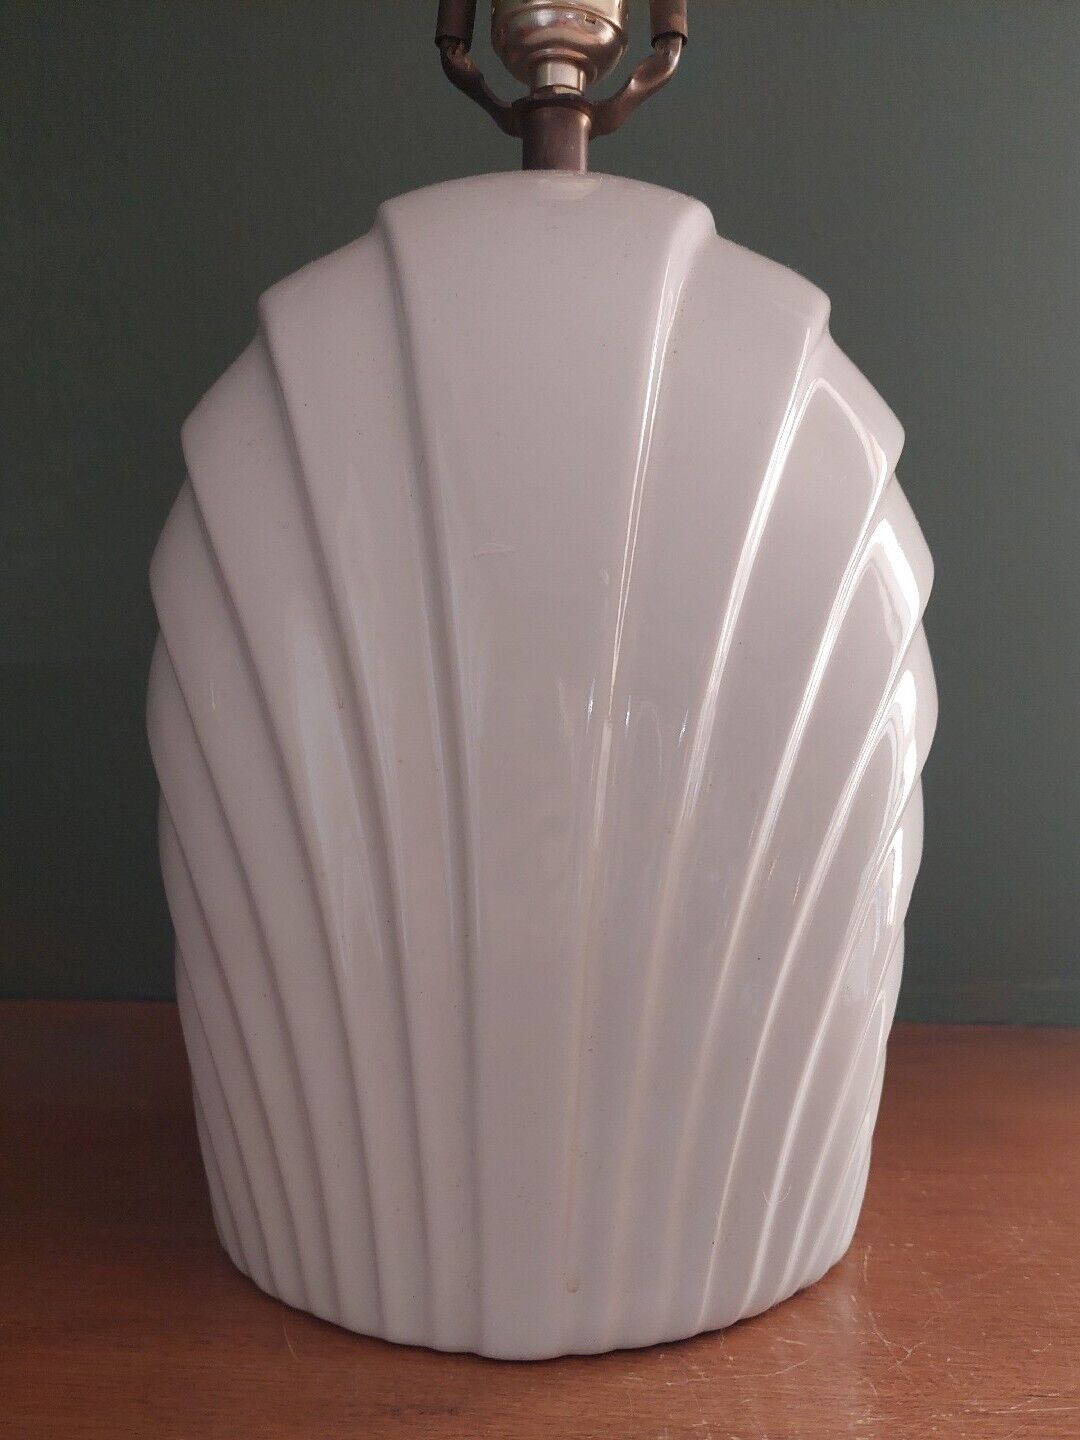 Vintage Post Modern Ceramic Lamp White 1980s Shell Motif